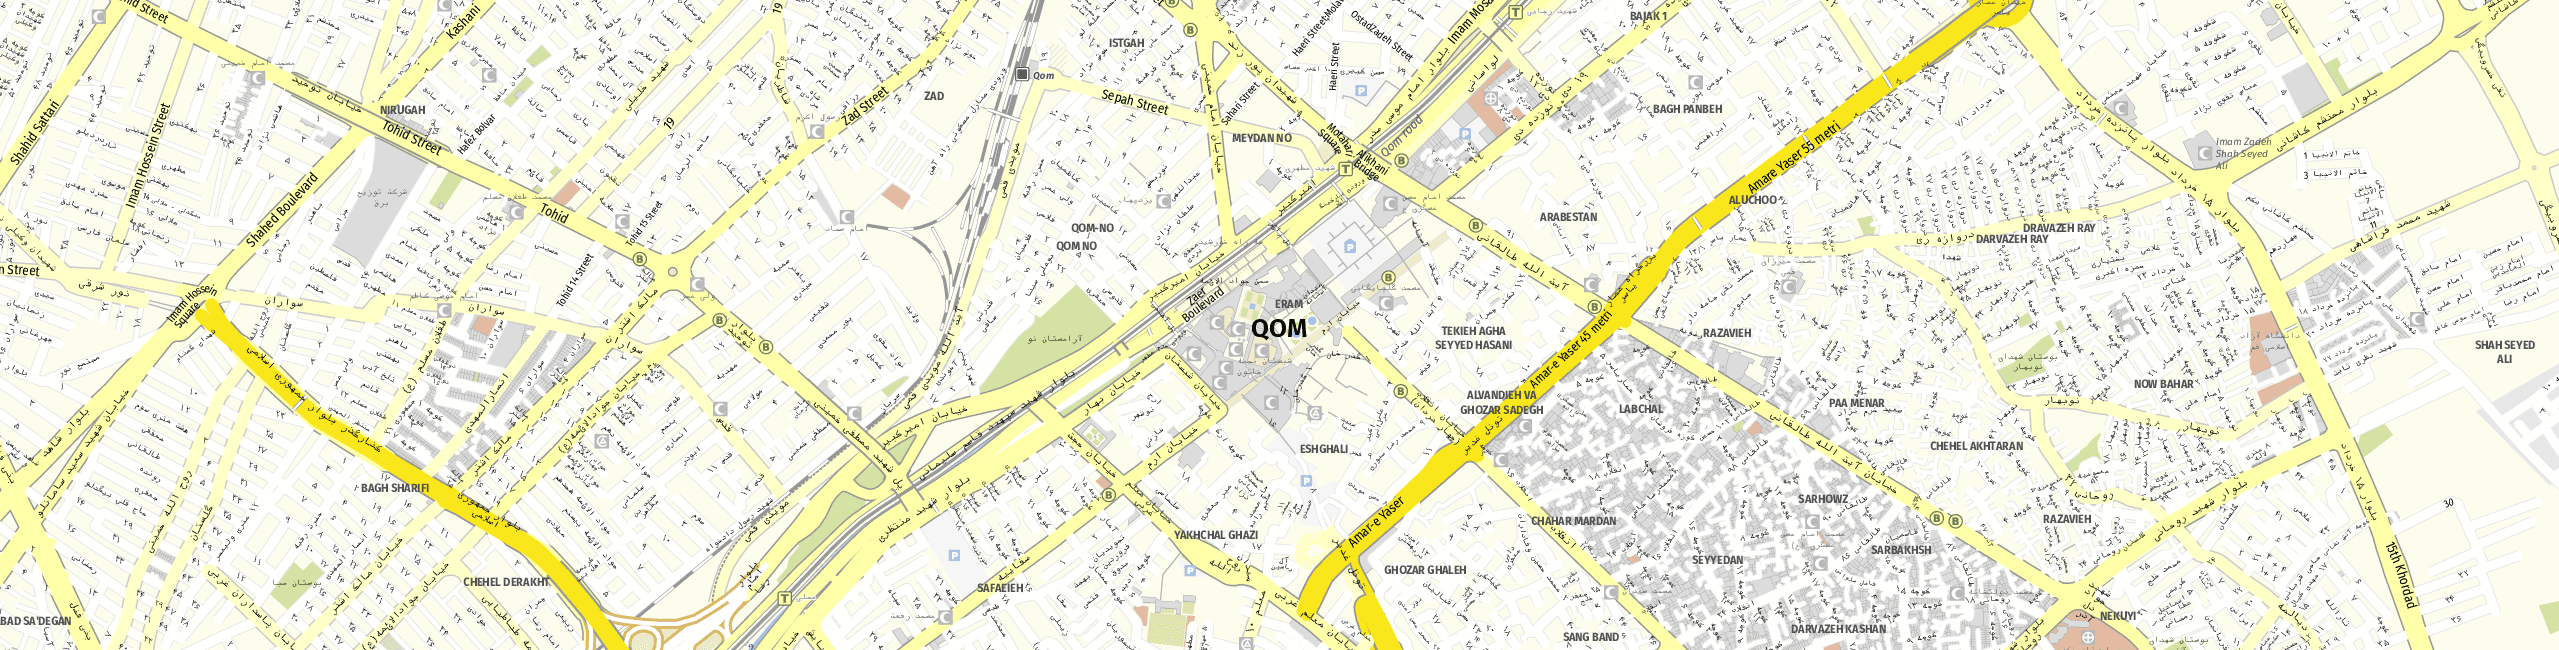 Stadtplan Qom zum Downloaden.